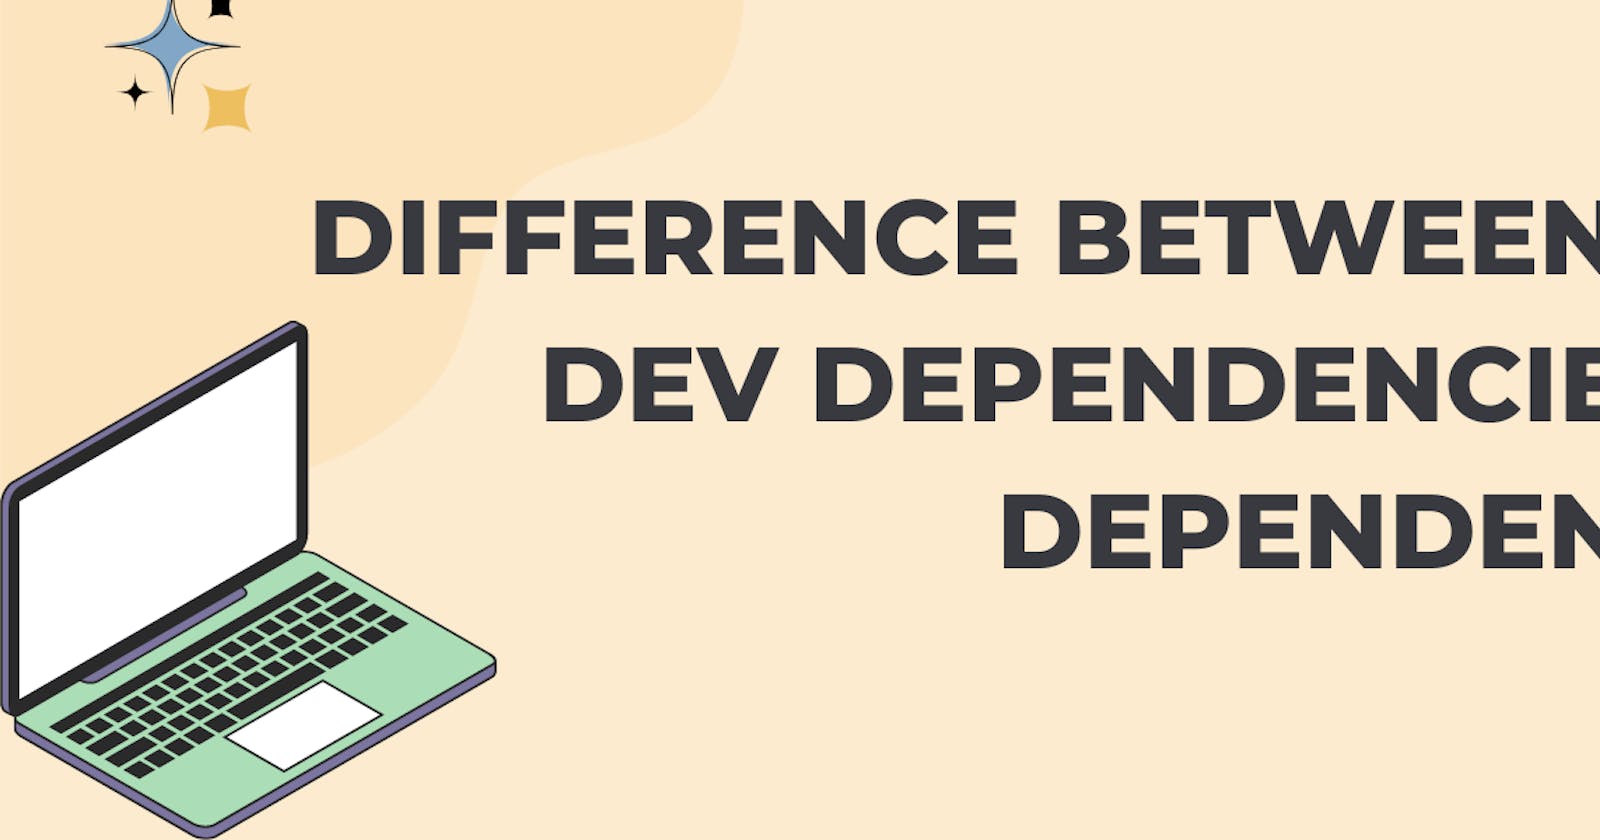 Difference between dependencies, dev dependencies, and peer dependencies